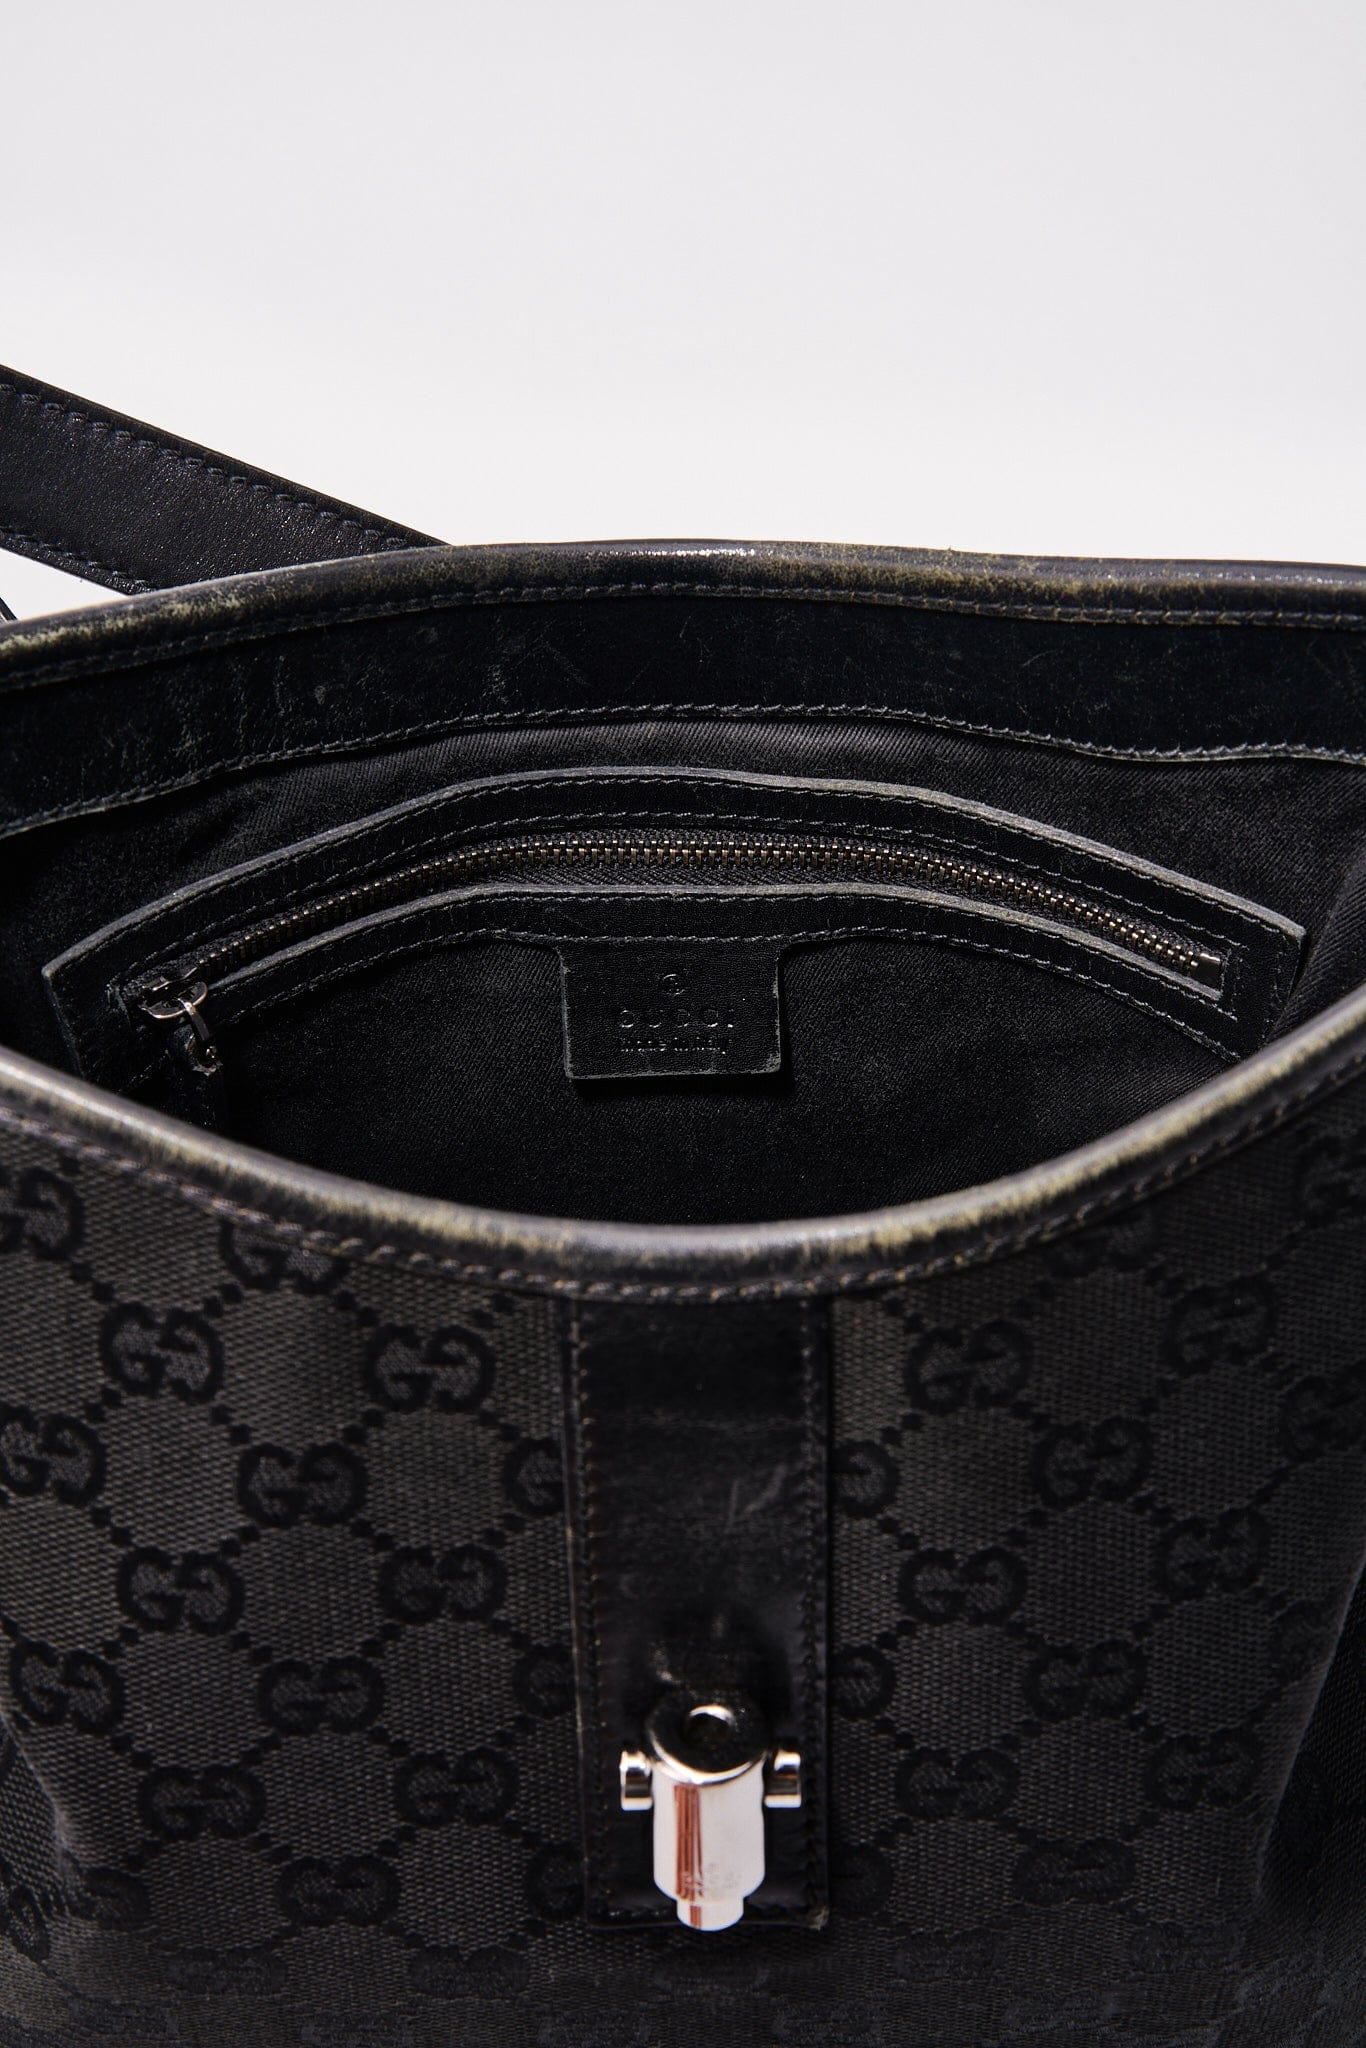 Vintage Gucci Black Shoulder Bag with Pistol Lock